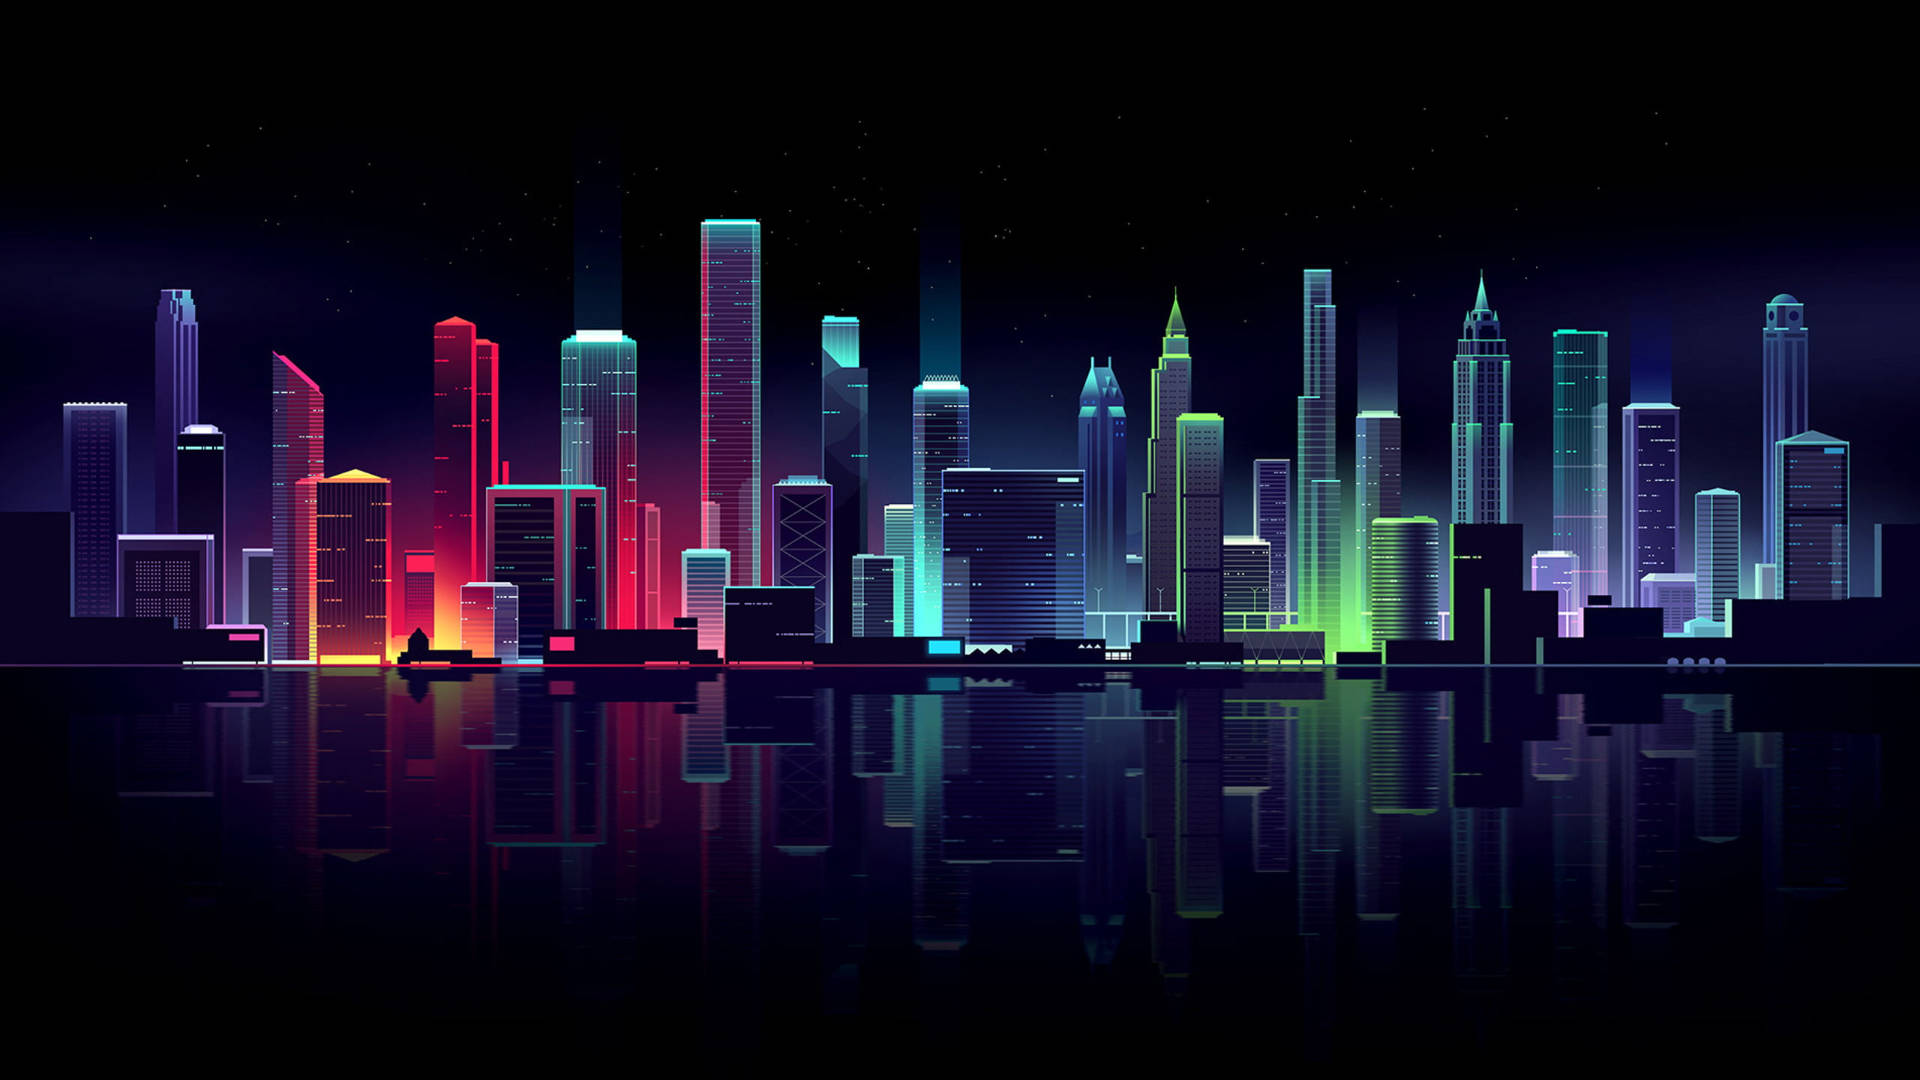 Neon cityscape image wallpaper.